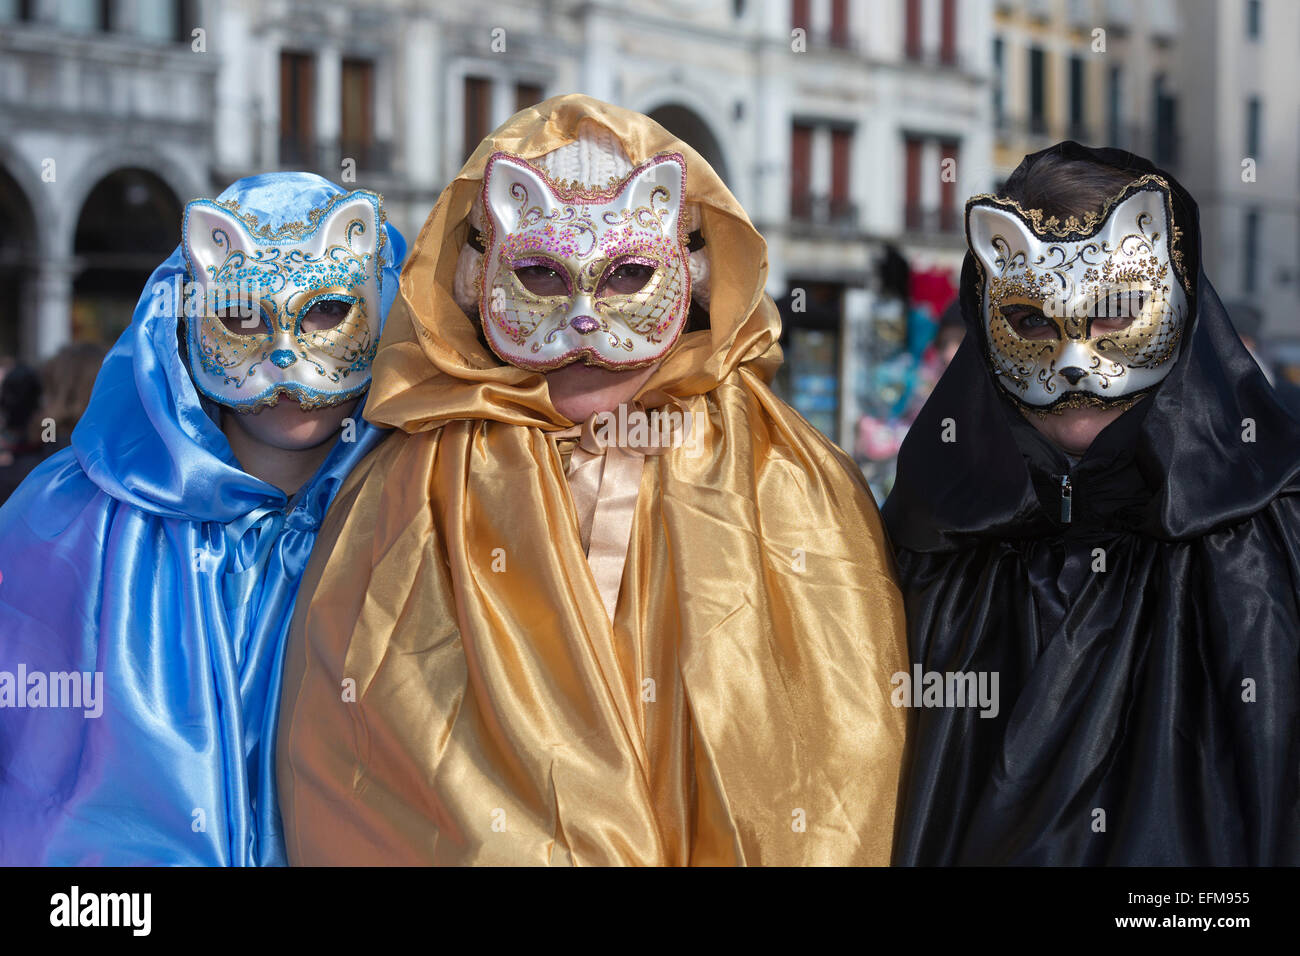 Venecia, Italia. El 7 de febrero de 2015. Las principales celebraciones de Carnaval en Venecia y tendrá lugar este próximo fin de semana con la gente vestirse y máscaras. Foto: carnivalpix/Alamy Live News Foto de stock